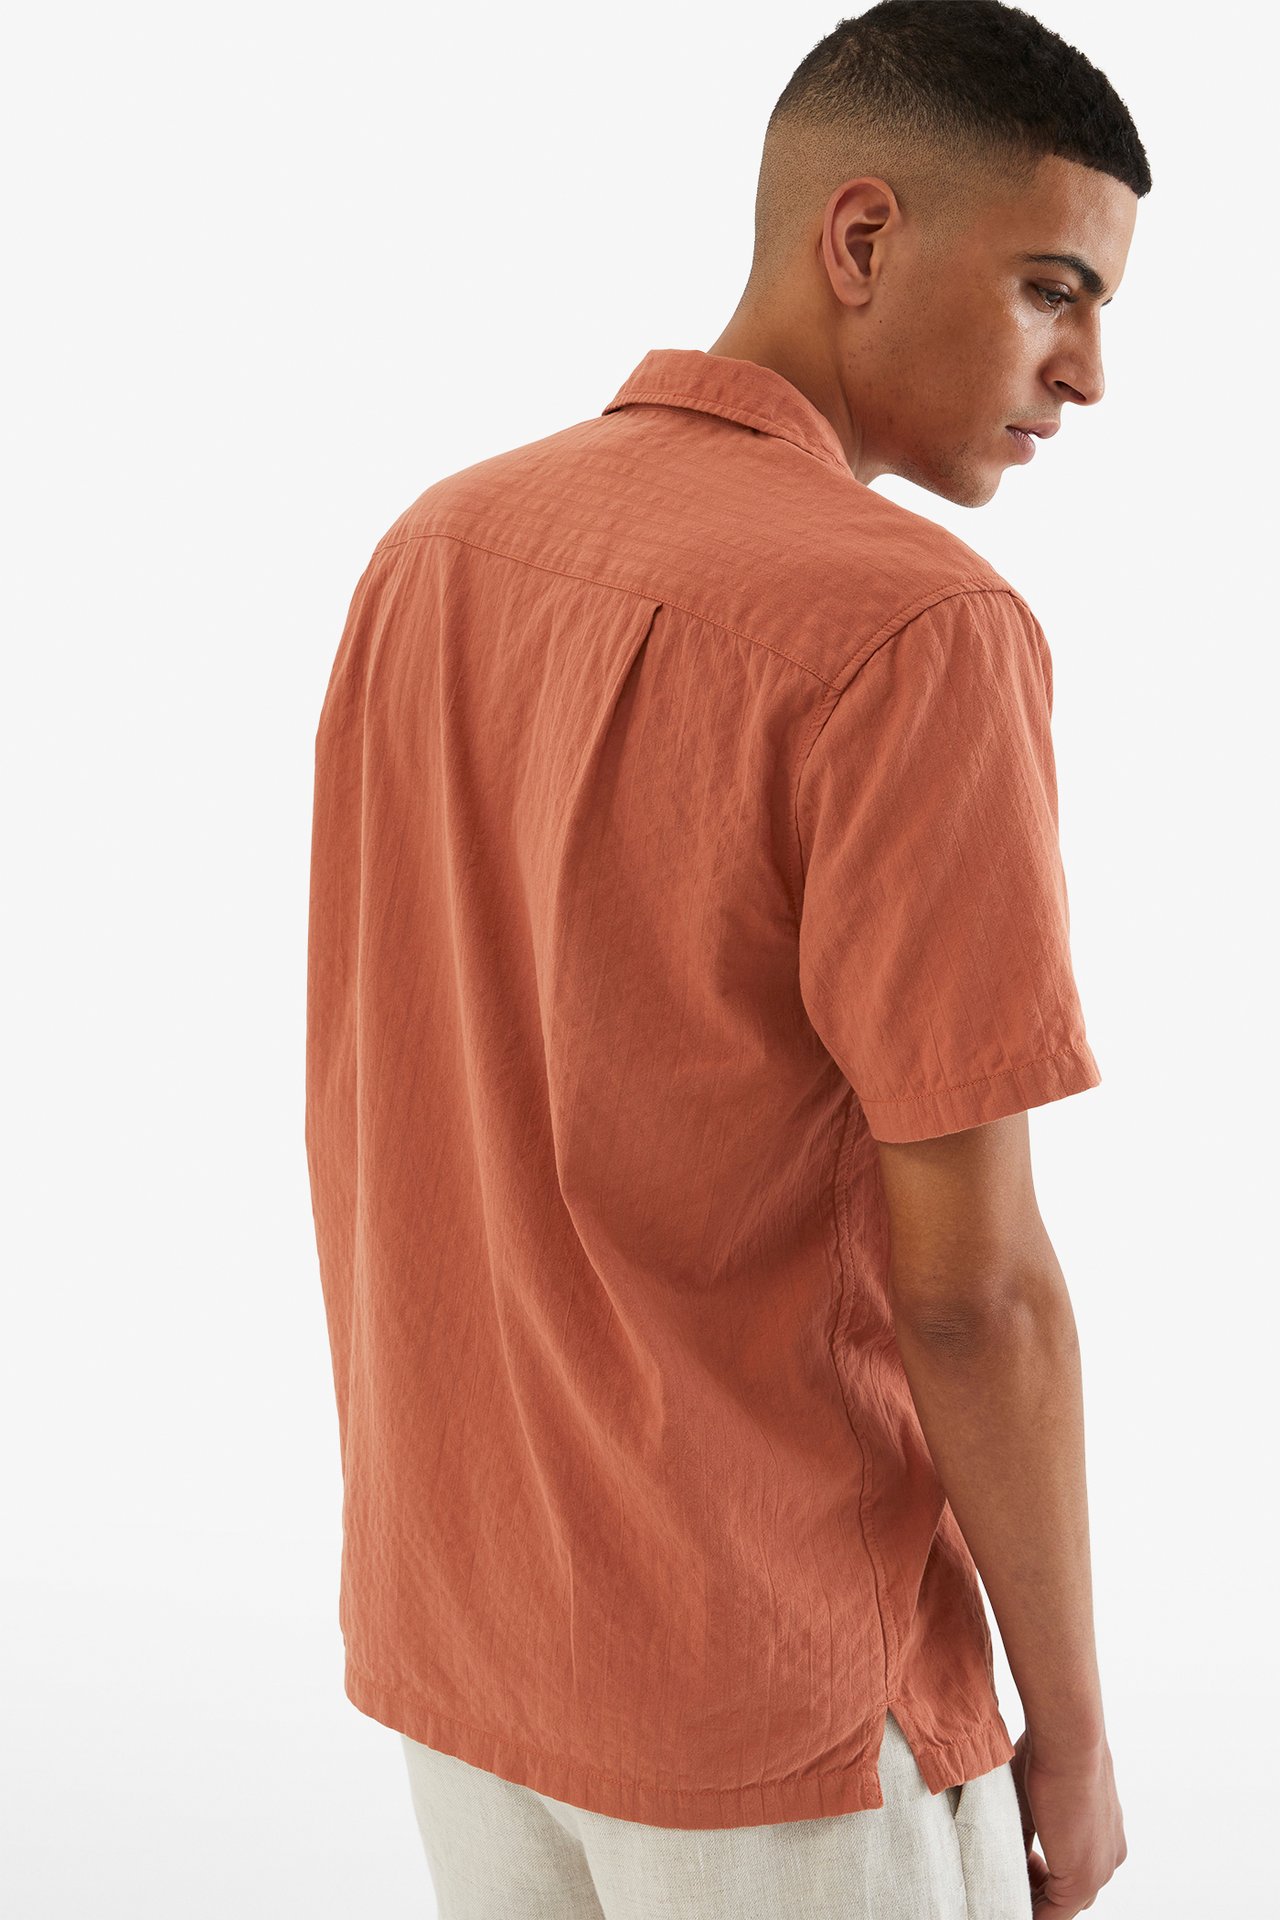 Resortskjorta i bäckebölja - Brun - 189cm / Storlek: M - 4